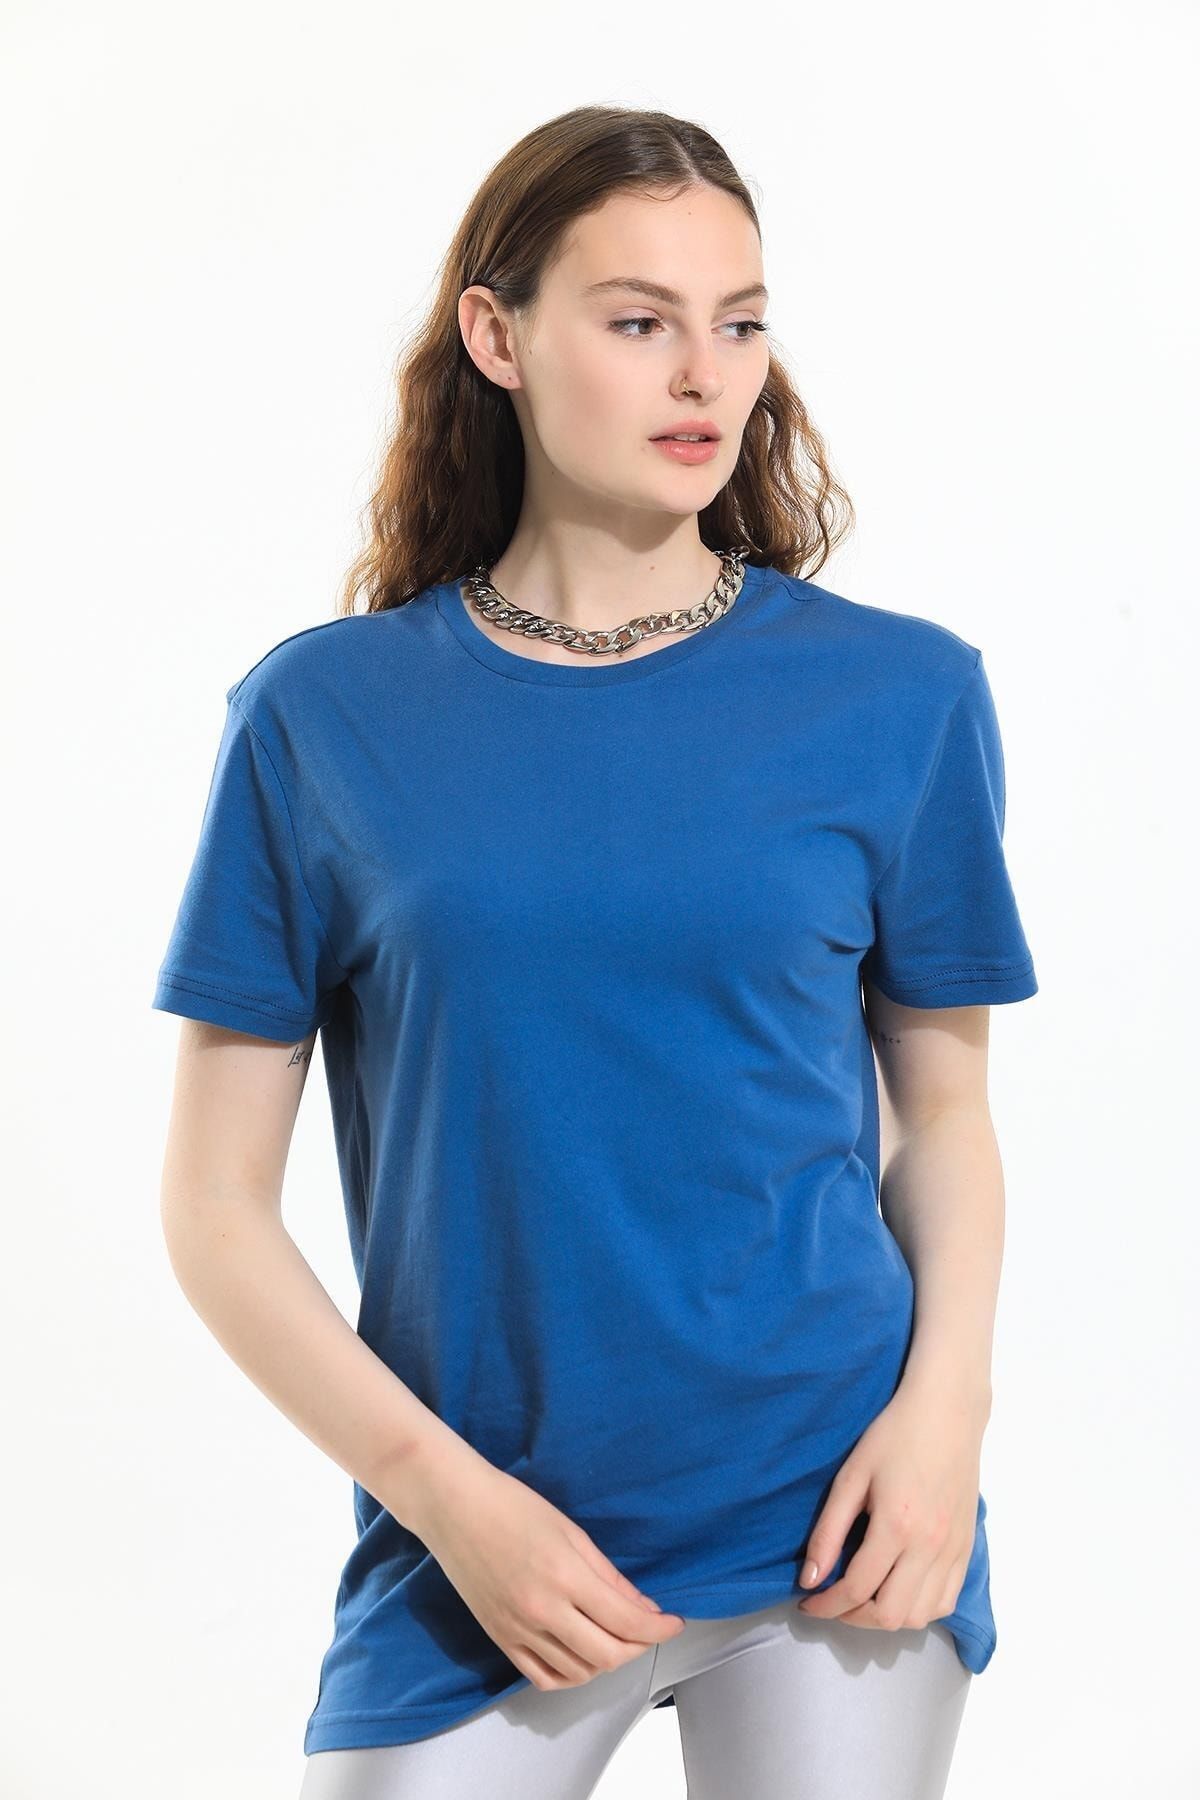 Domoda İndigo Indigo Indigo, Oversize Fit Pamuklu Kısa Kollu Basic Uniseks Kadın Erkek Tişört